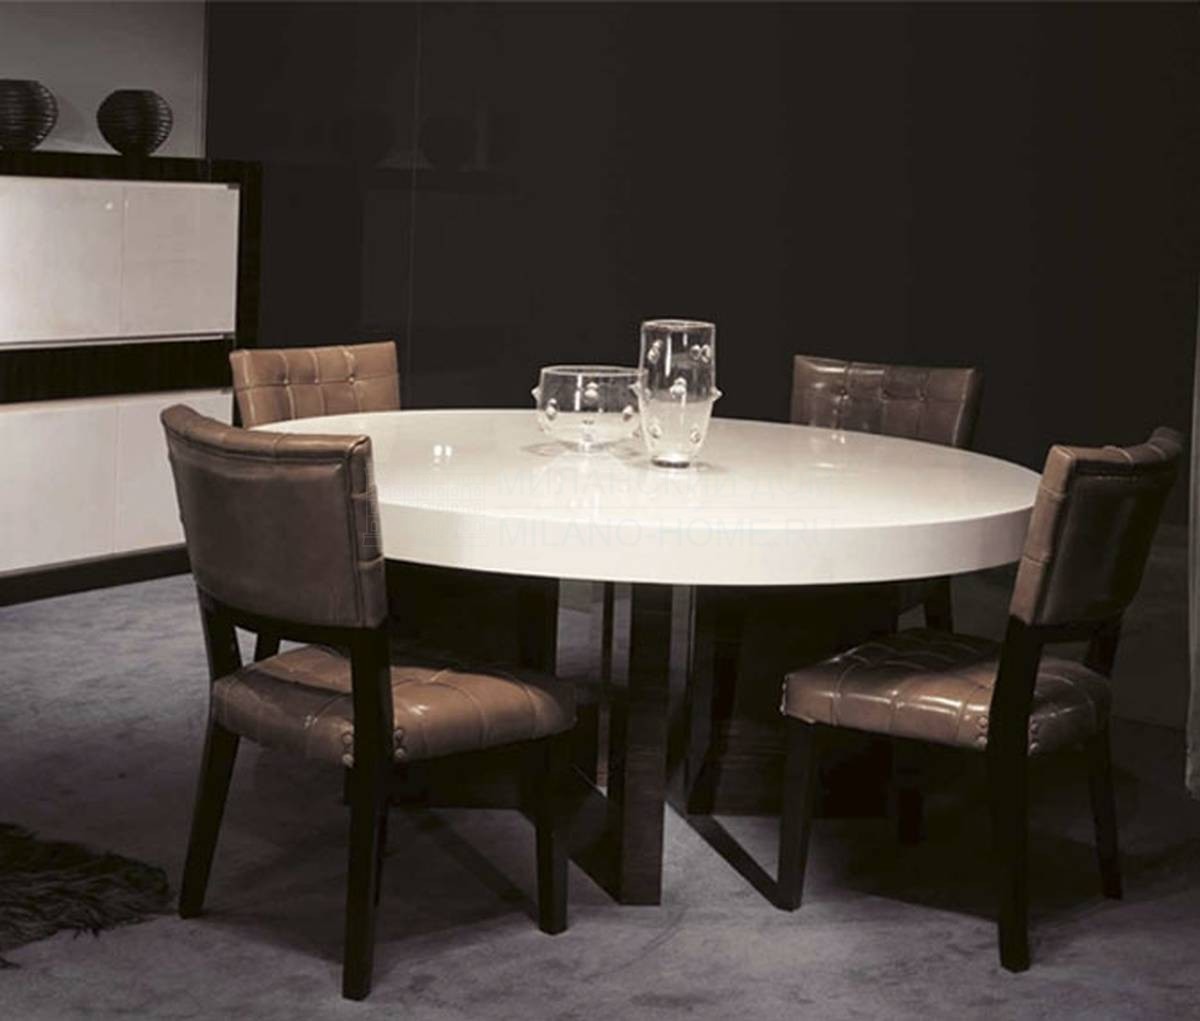 Обеденный стол Bel-Ami Table из Италии фабрики ULIVI